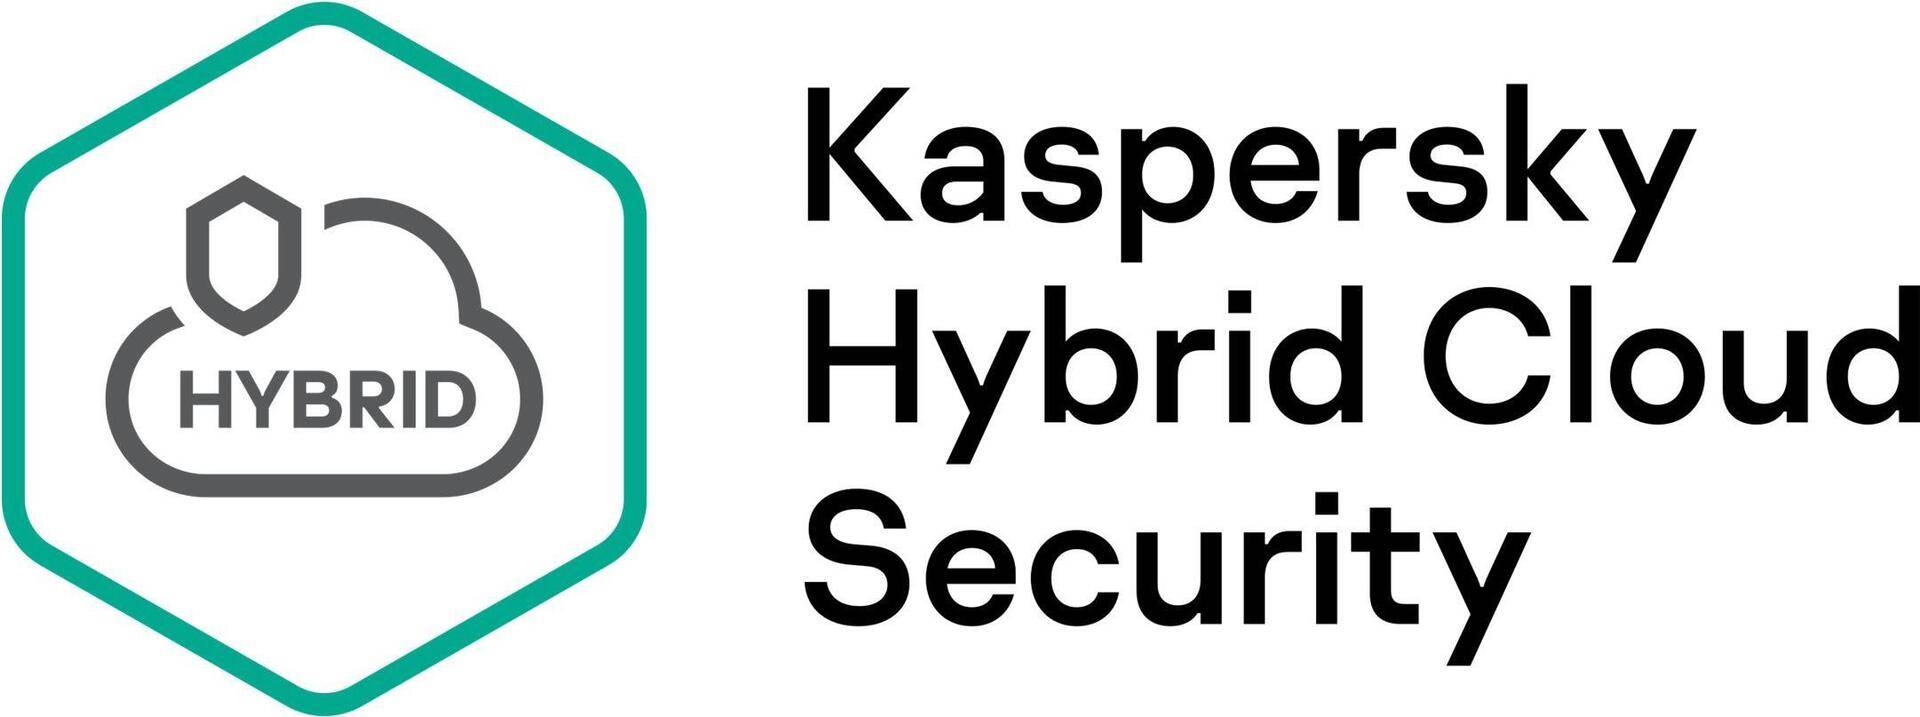 Kaspersky Hybrid Cloud Security Enterprise CPU European Edi. 3 - CPU 1-Year Renewal License (KL4553XACFR) von Kaspersky Lab